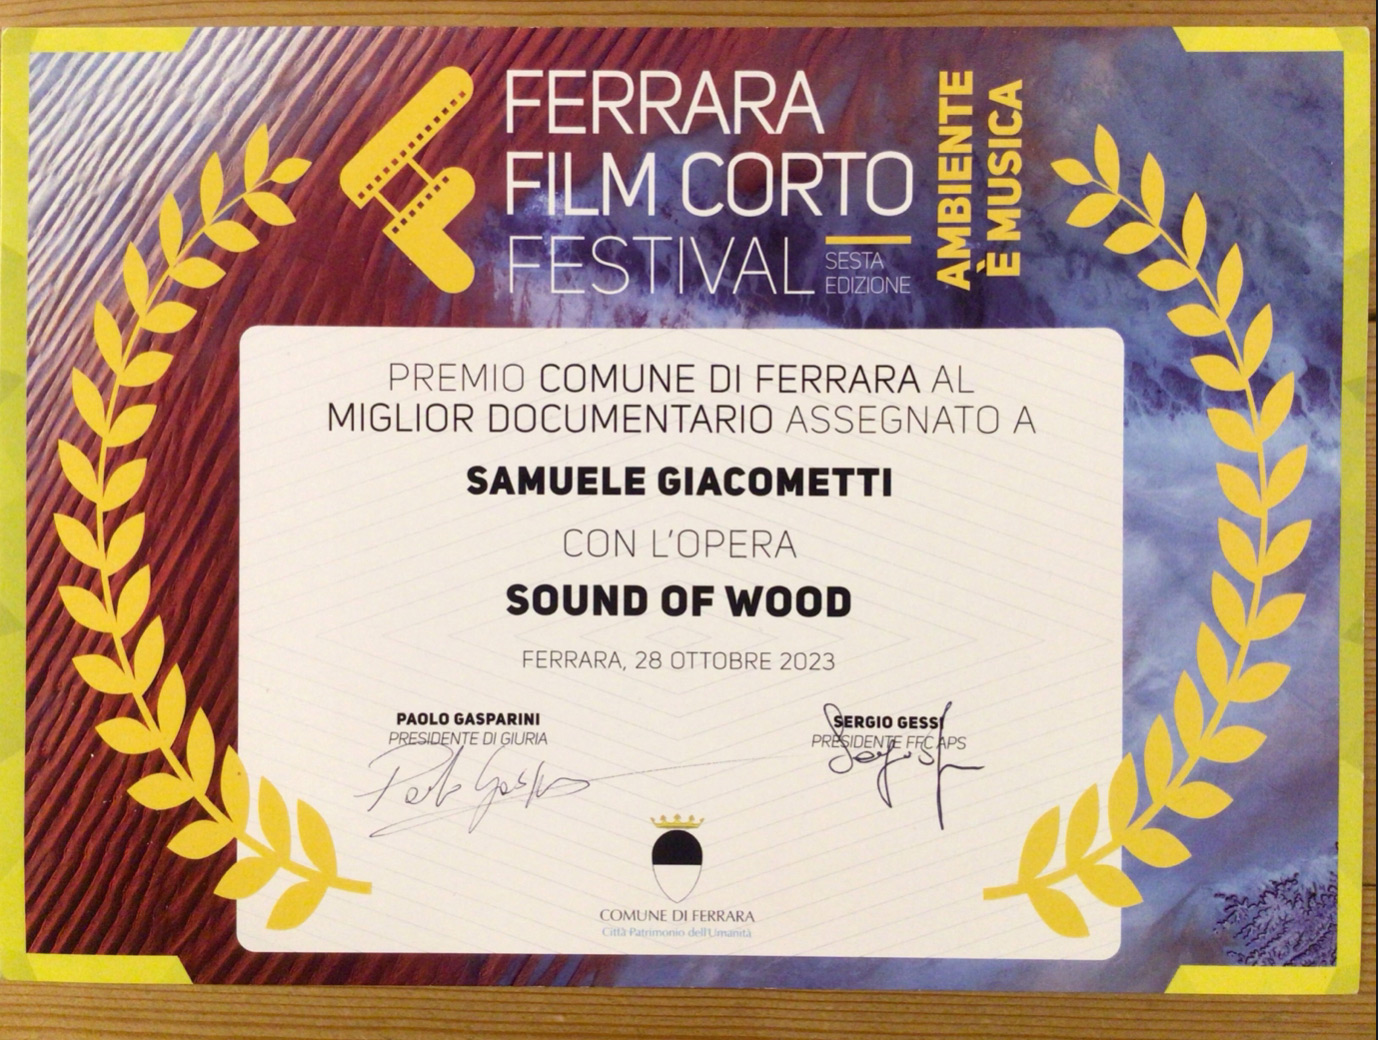 âSuono del Legnoâ, miglior documentario al Ferrara Film Corto Festival 2023